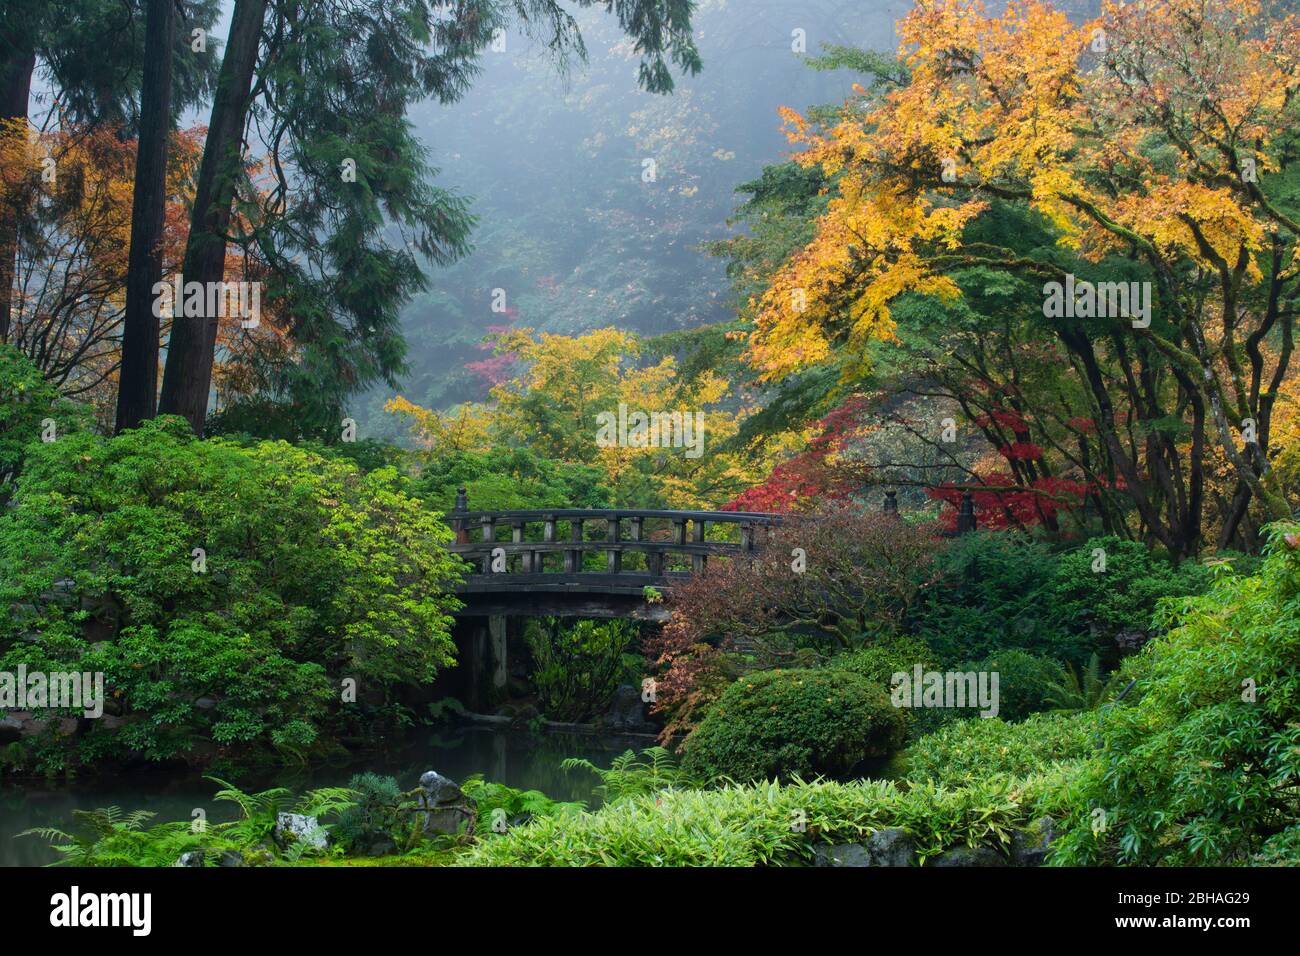 Footbridge in Japanese garden, Portland, Oregon, USA Stock Photo